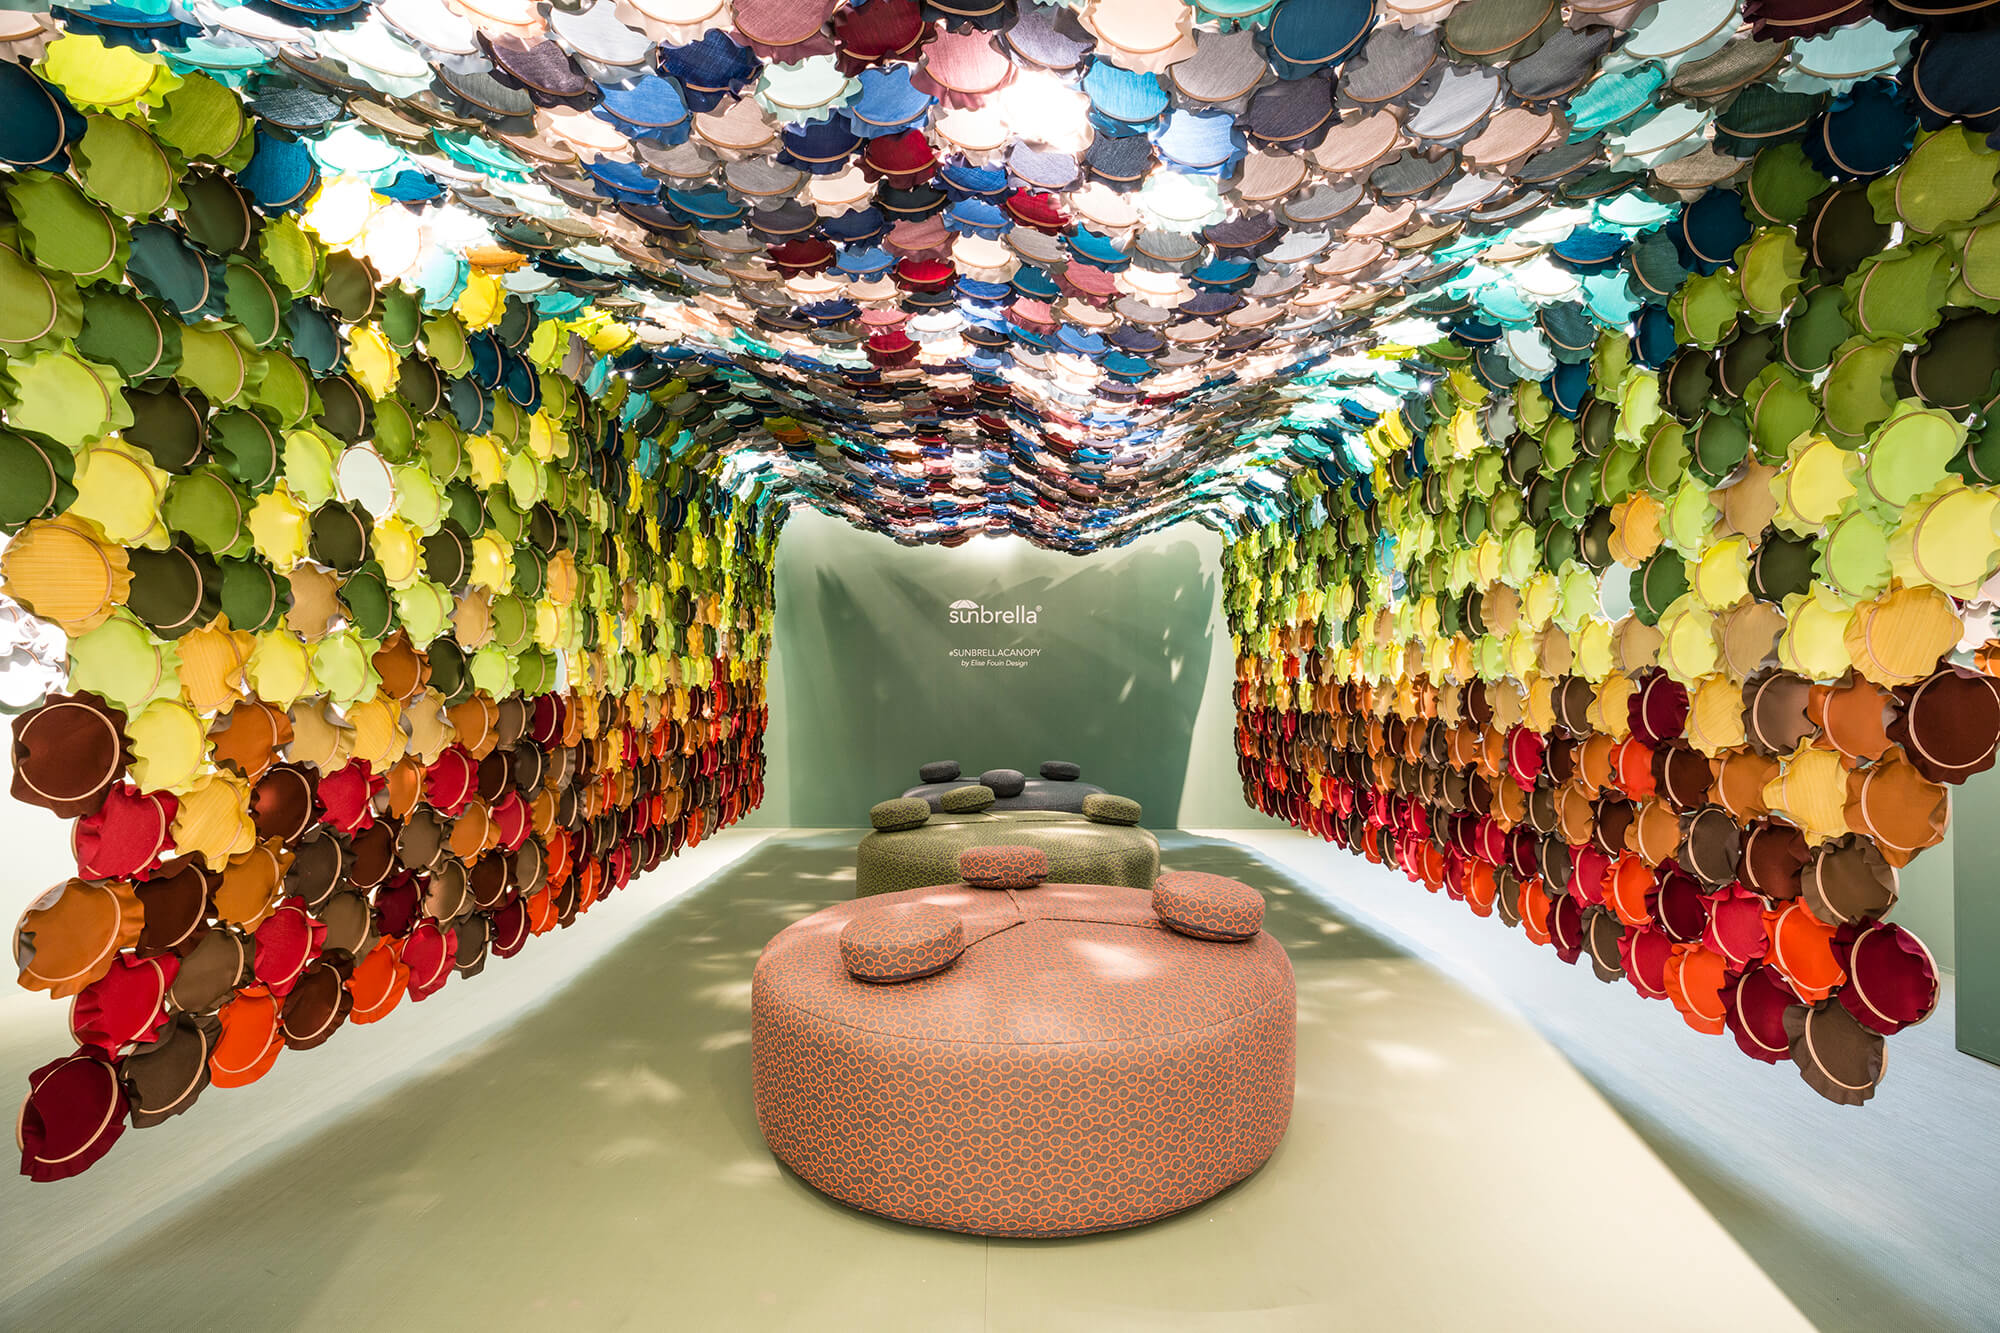 Birleştirilmiş nakış kasnakları halinde parlak renklerde Sunbrella kumaşlarını sergileyen sanat kurulumu.